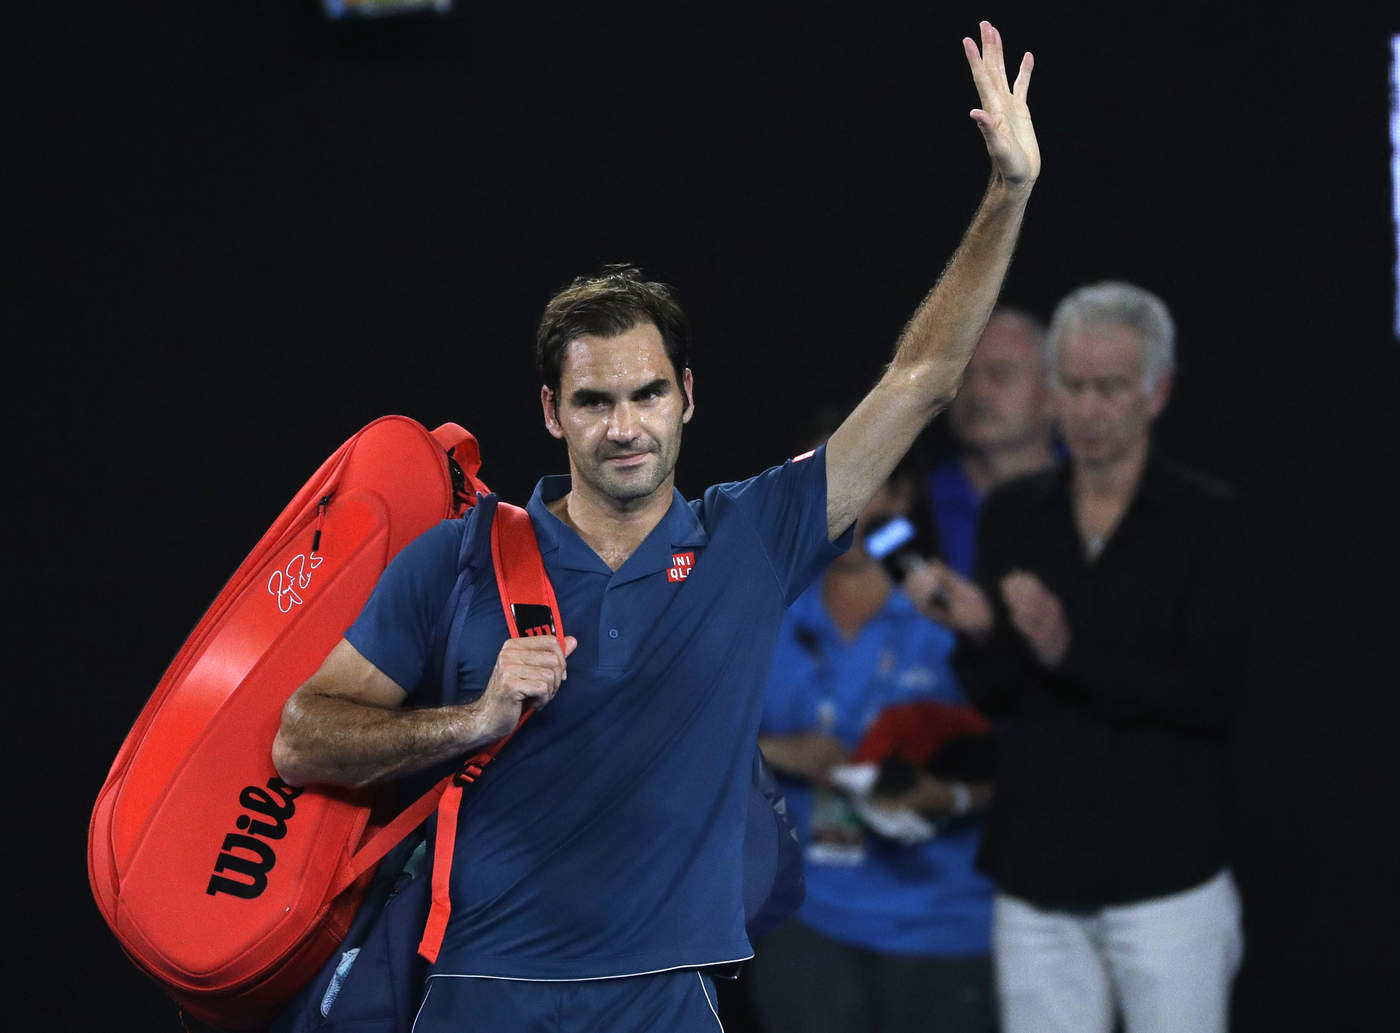 Tras caer en octavos de final, y no poder defender los puntos que ganó con su título en 2018, Roger Federer cayó hasta el sexto lugar. (AP)